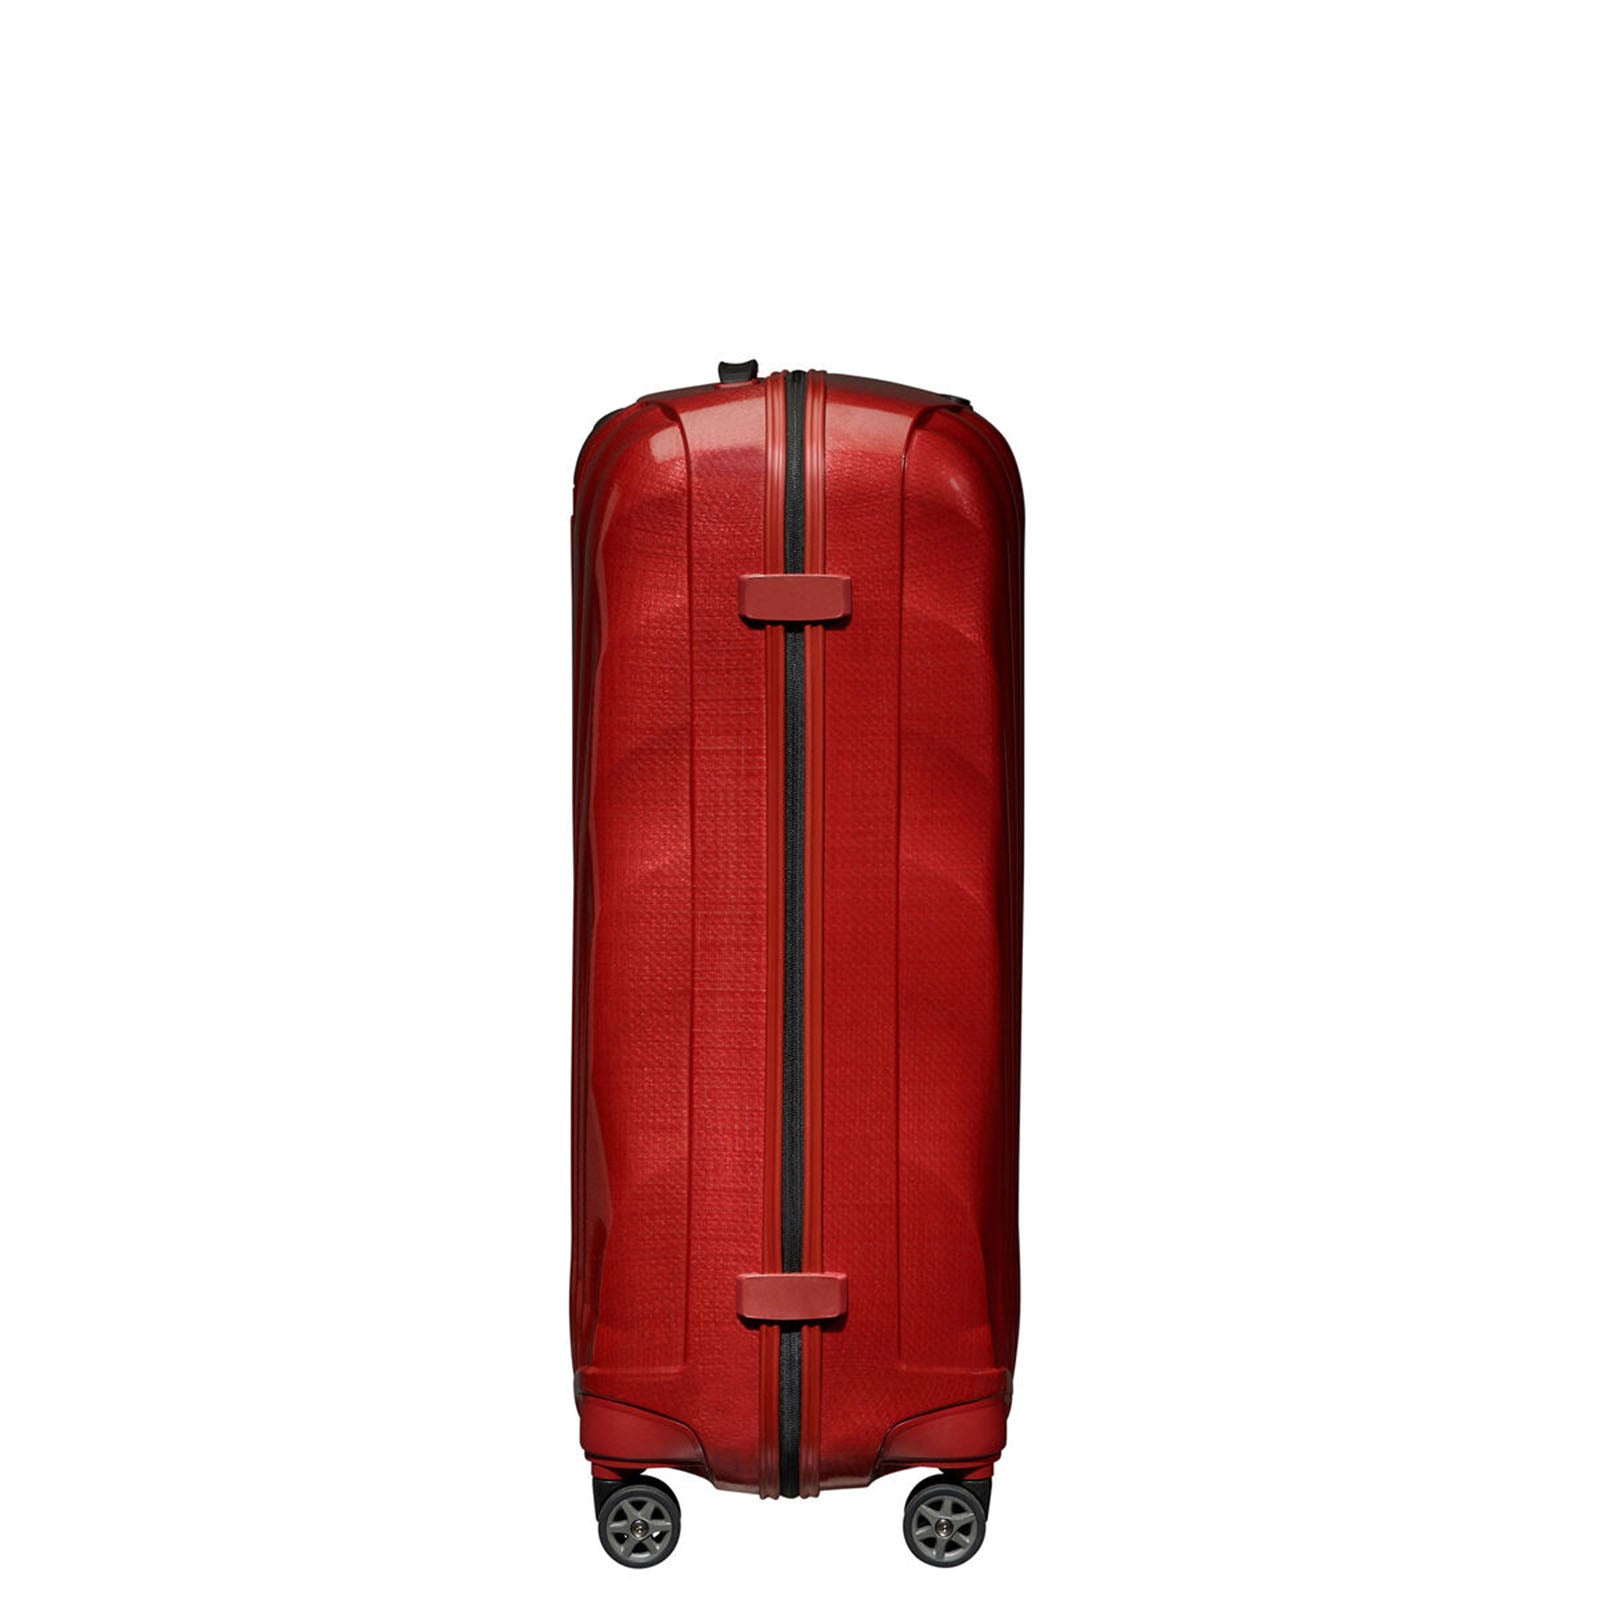 Samsonite-C-Lite-75cm-Suitcase-Chili-Red-Side